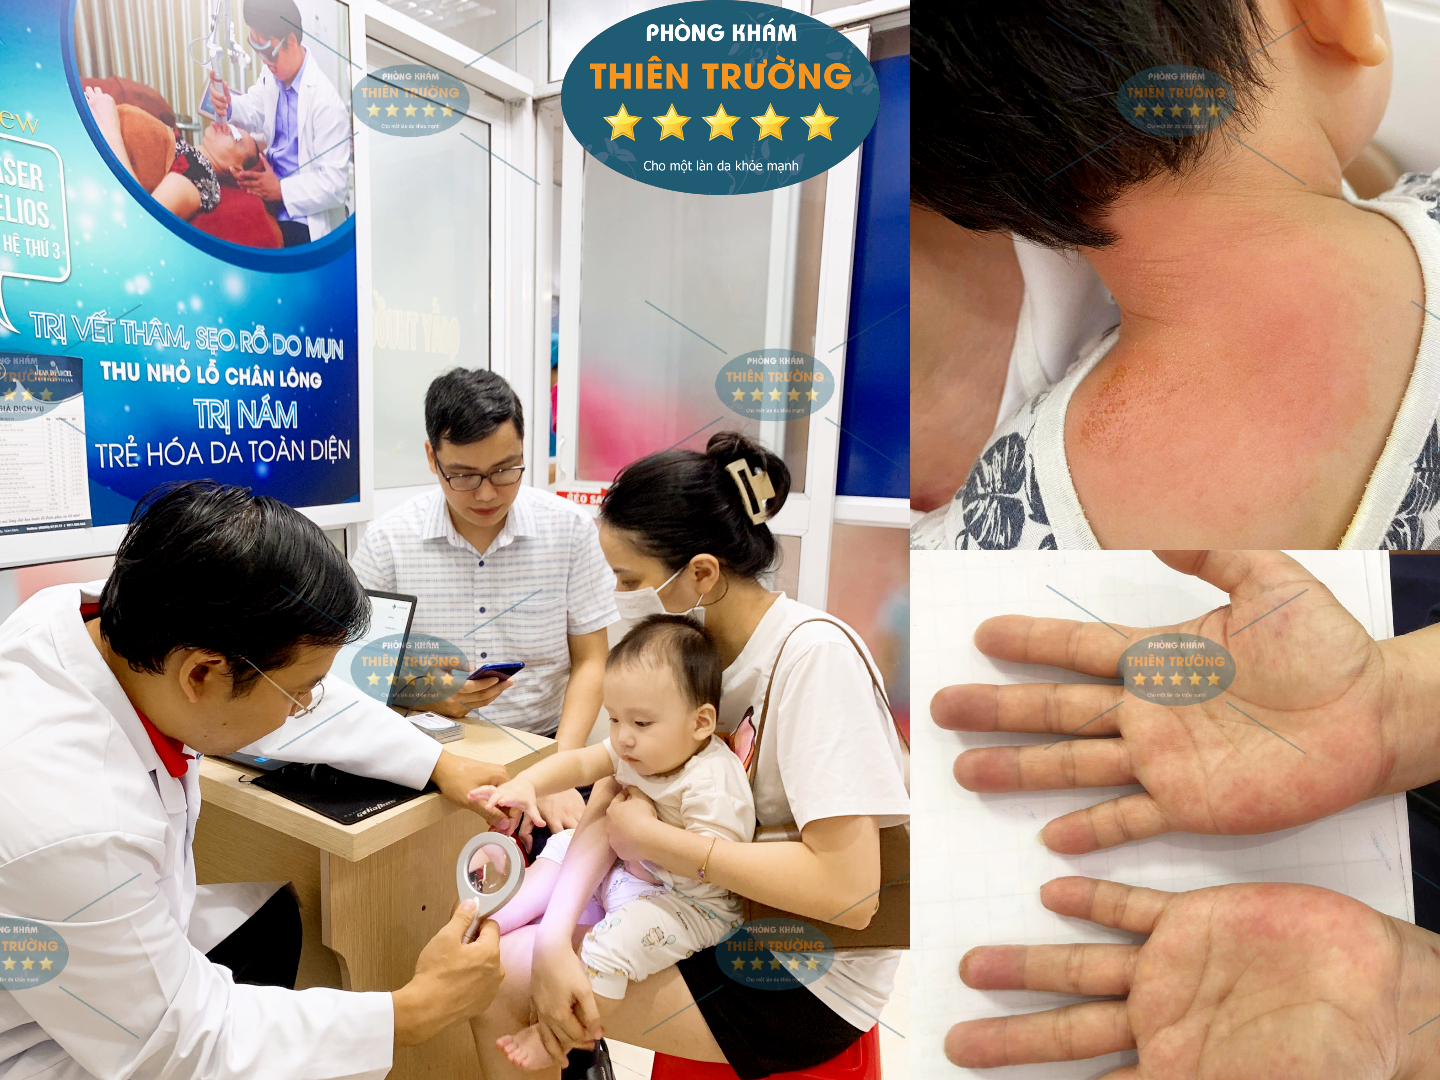 Hình ảnh: Thạc sĩ - Bác sĩ CK II Nguyễn Tiến Thành đang khám Da cho bệnh nhân.